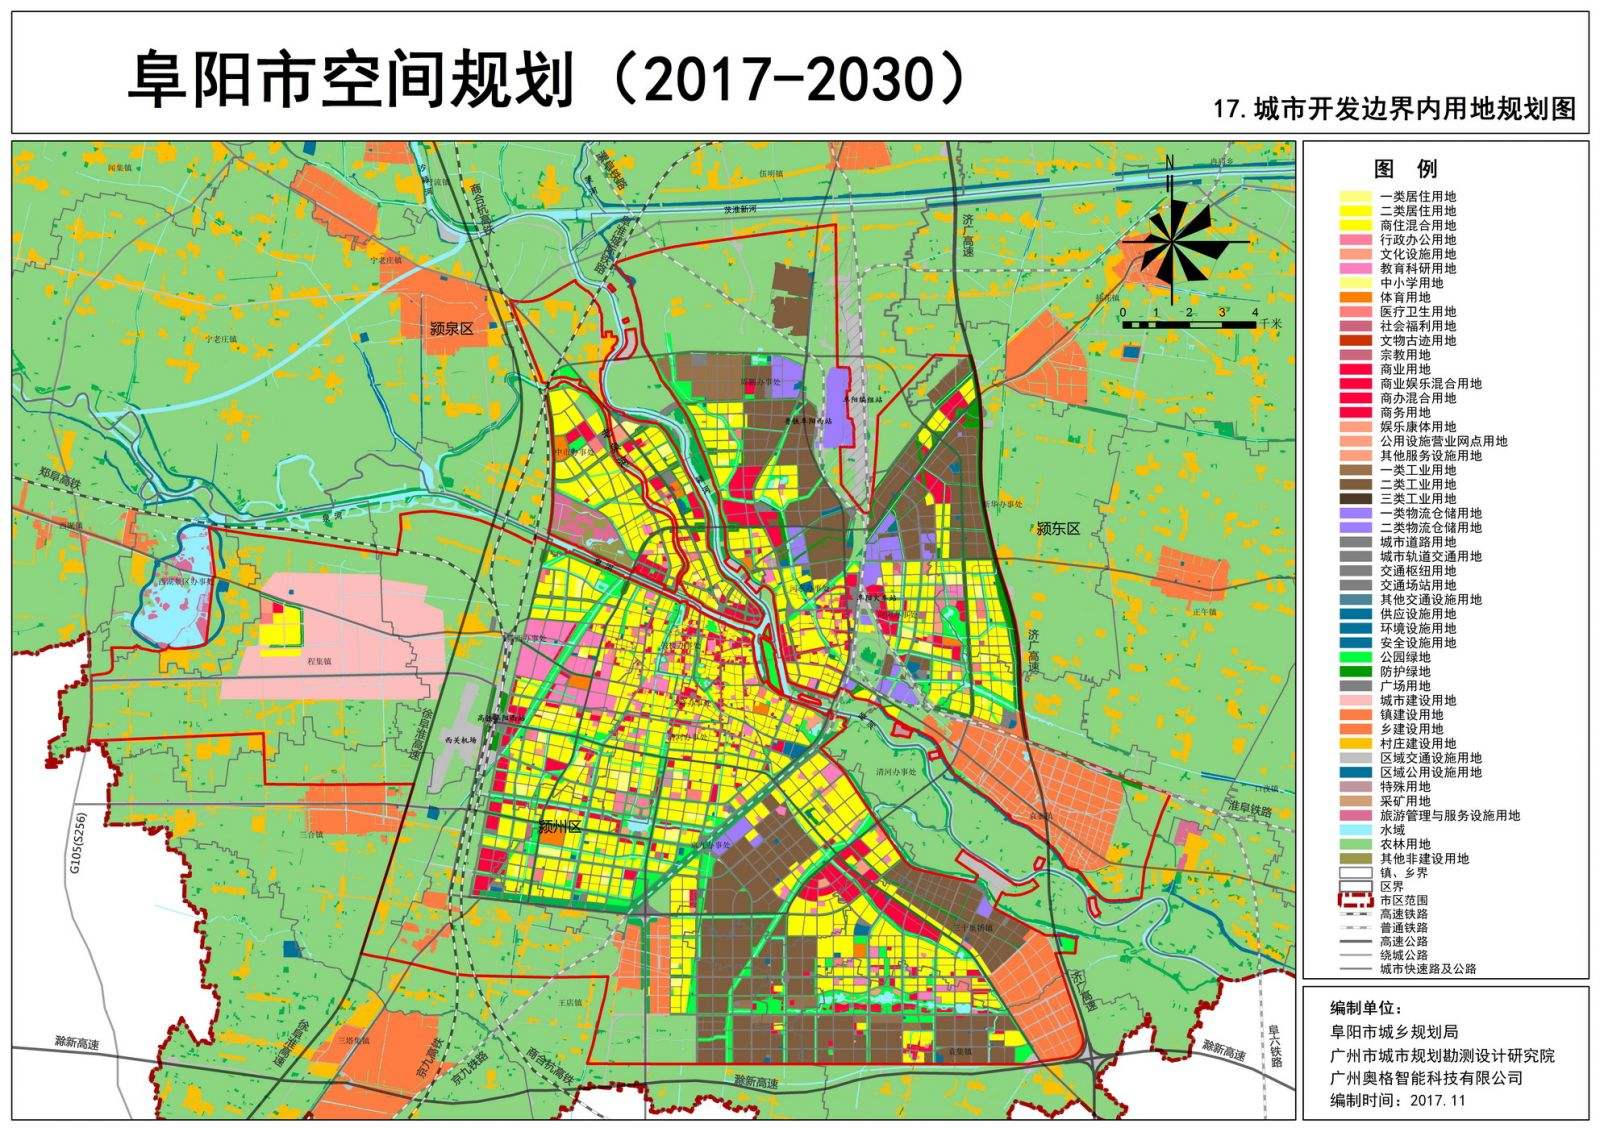 下图是11月17日,阜阳市城乡规划局发布的《阜阳市空间规划(2017-2030